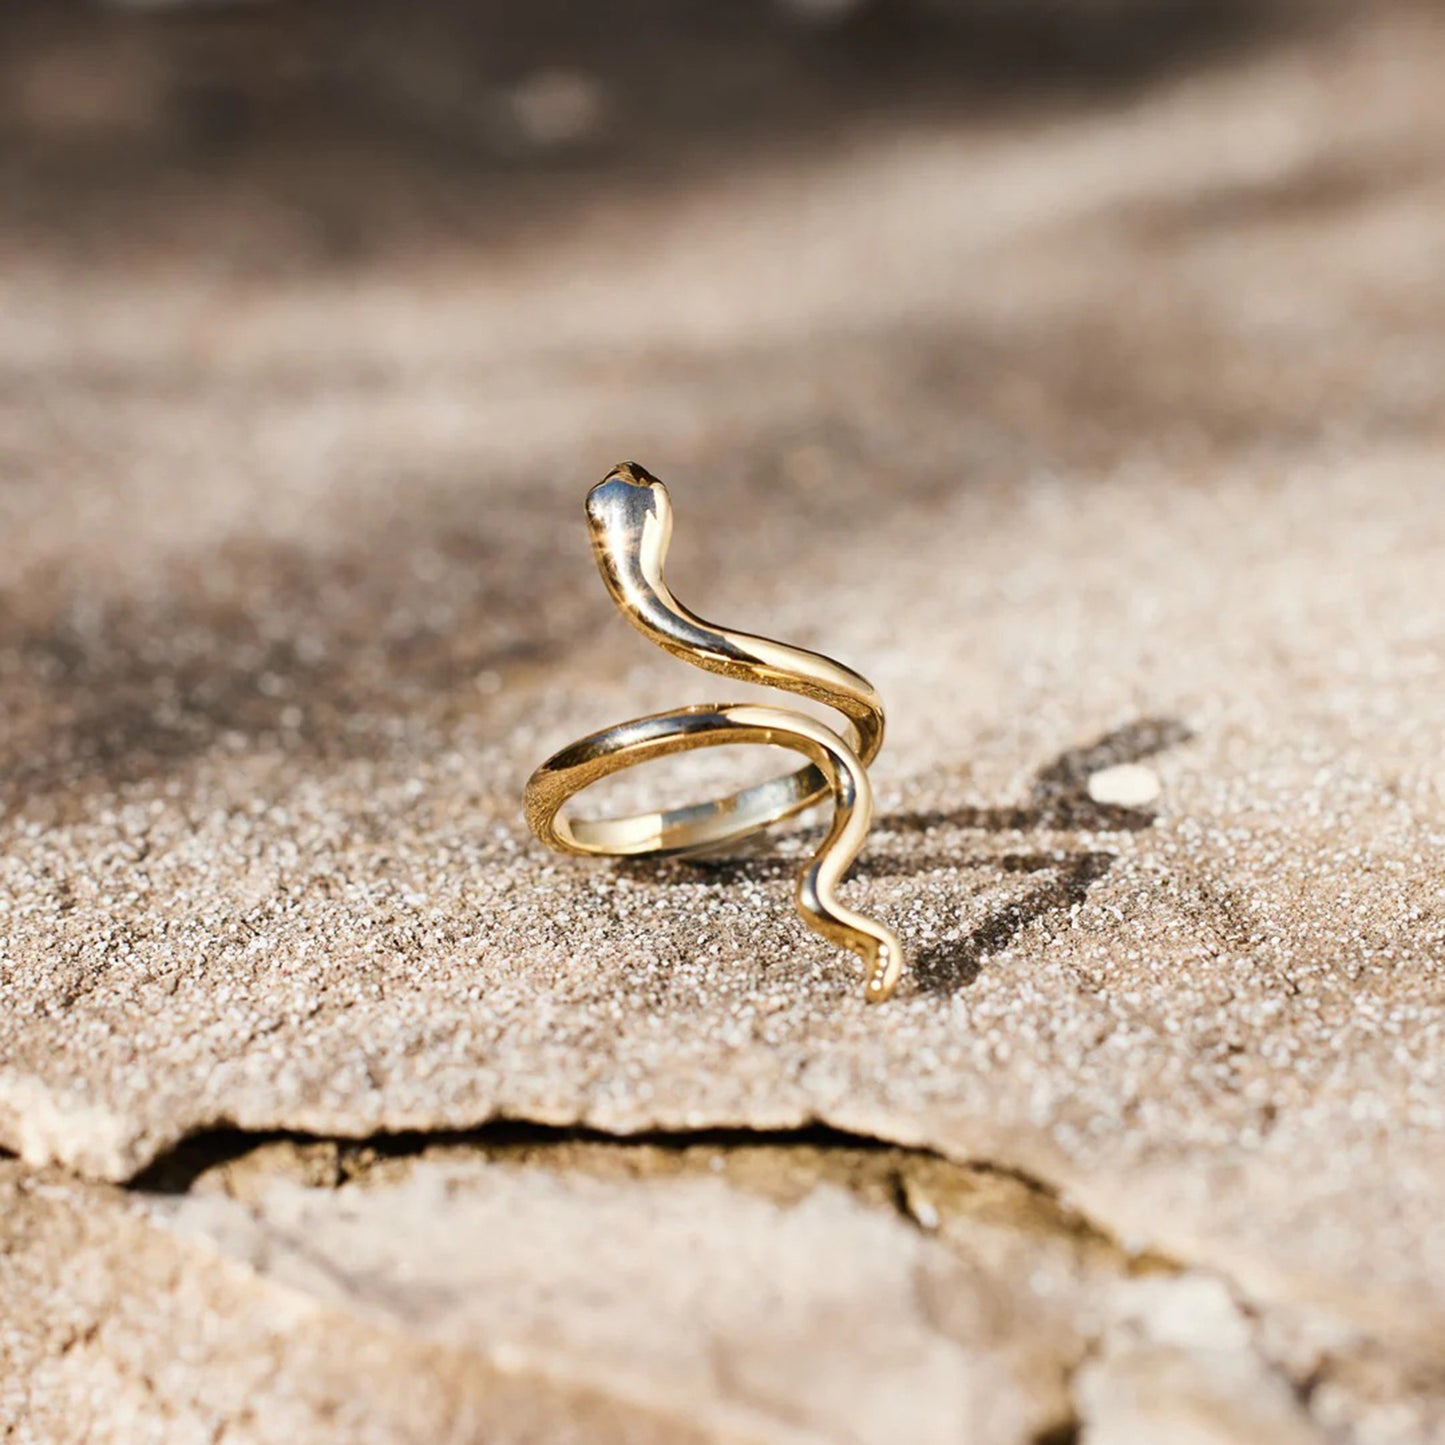 Schlangenförmiger, 18 Karat vergoldeter Bypass-Ring